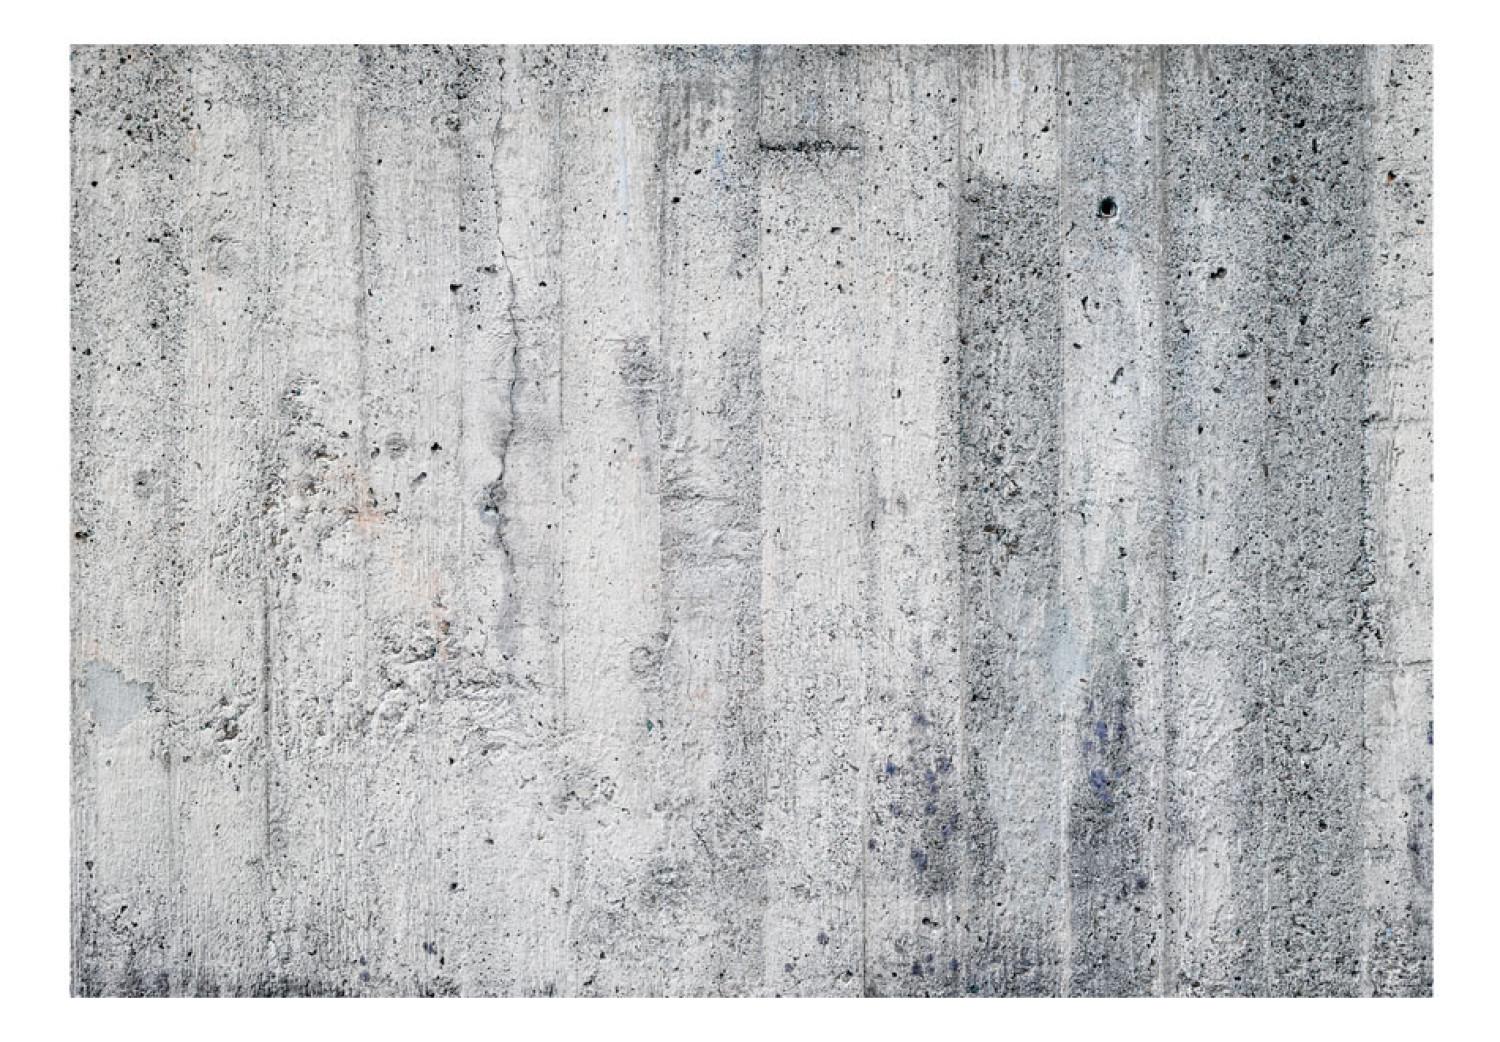 Fotomural decorativo Motivo arquitectónico urbano - fondo monocromo con textura de concreto